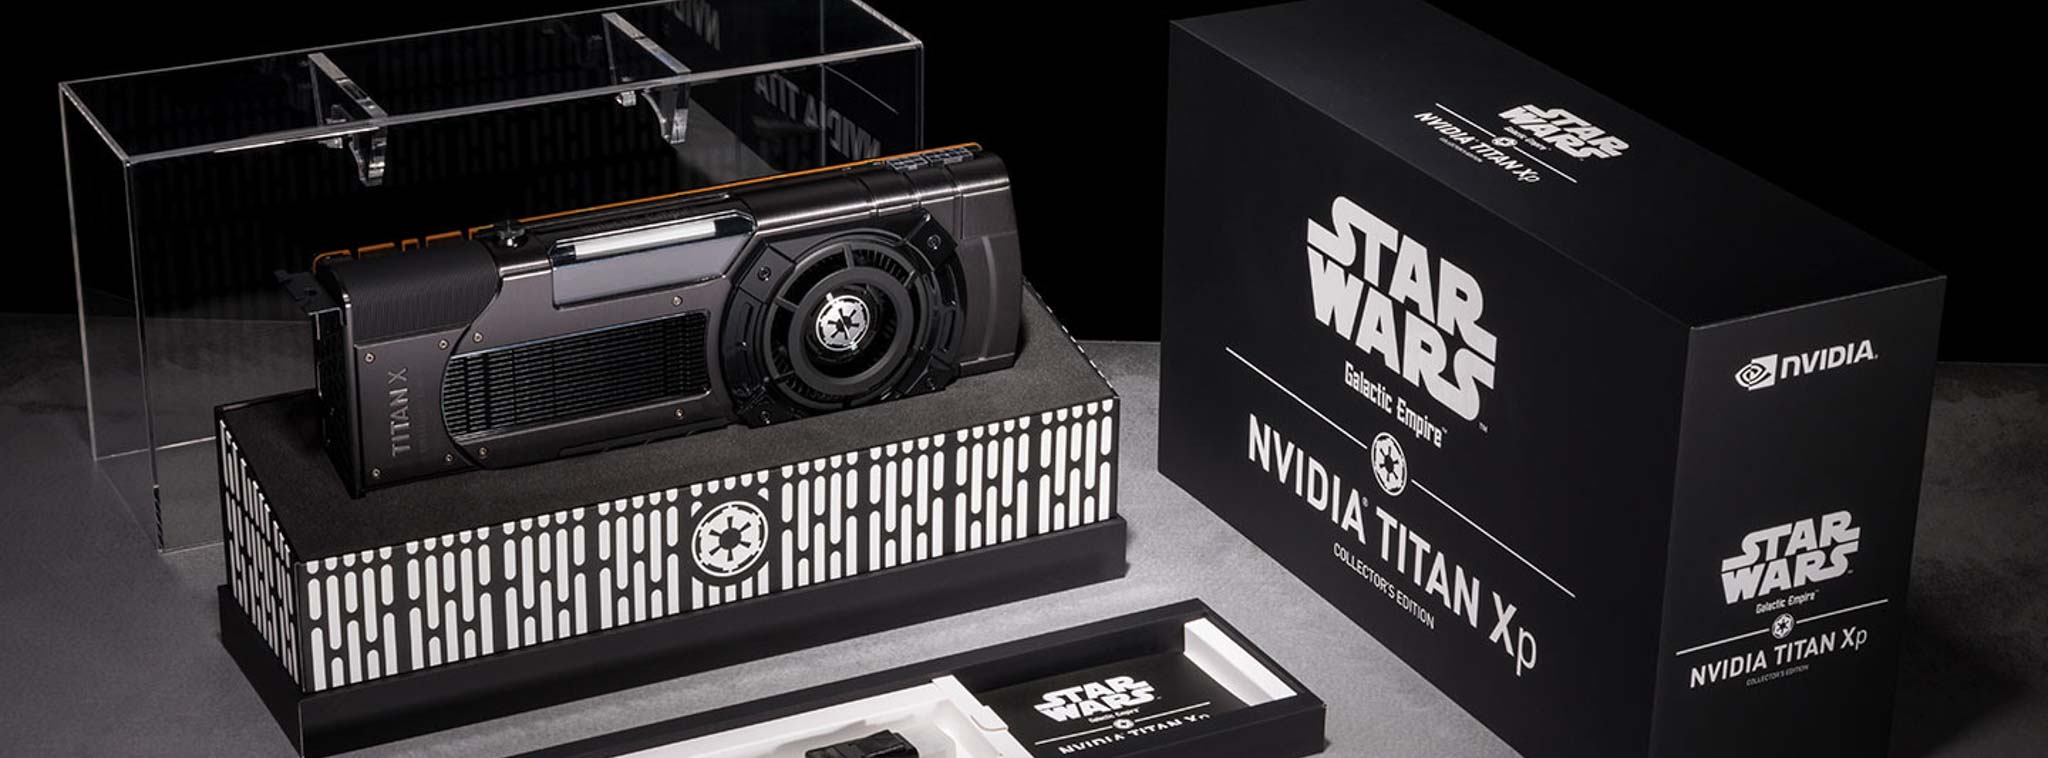 Nvidia ra mắt card màn hình Titan Xp phiên bản Star Wars, giá 1200 USD